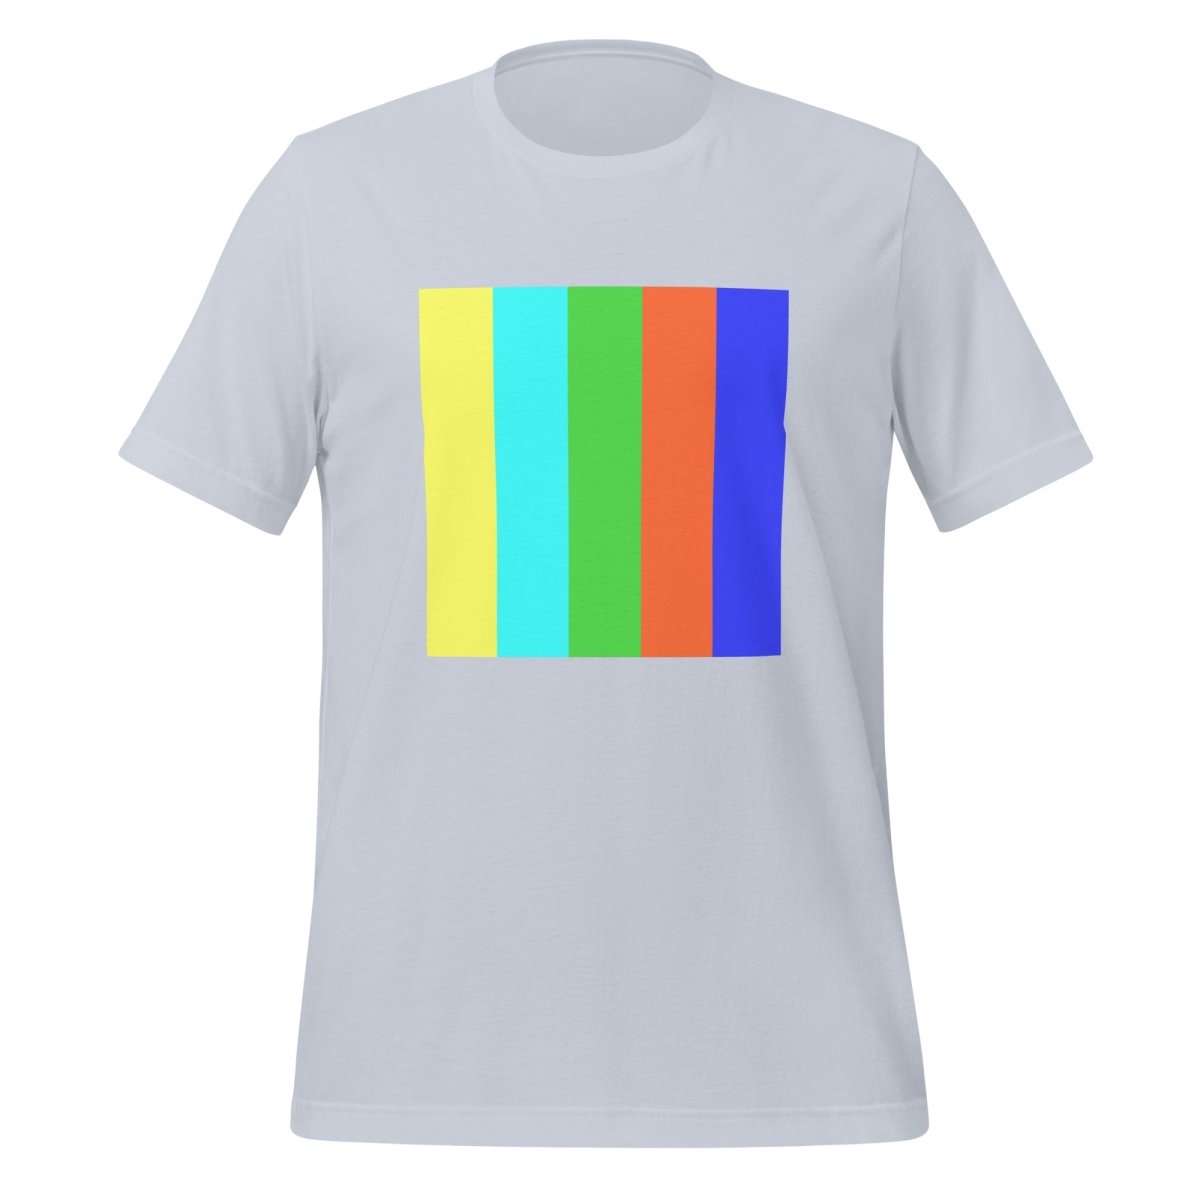 DALL - E 2 Square Watermark T - Shirt (unisex) - Light Blue - AI Store